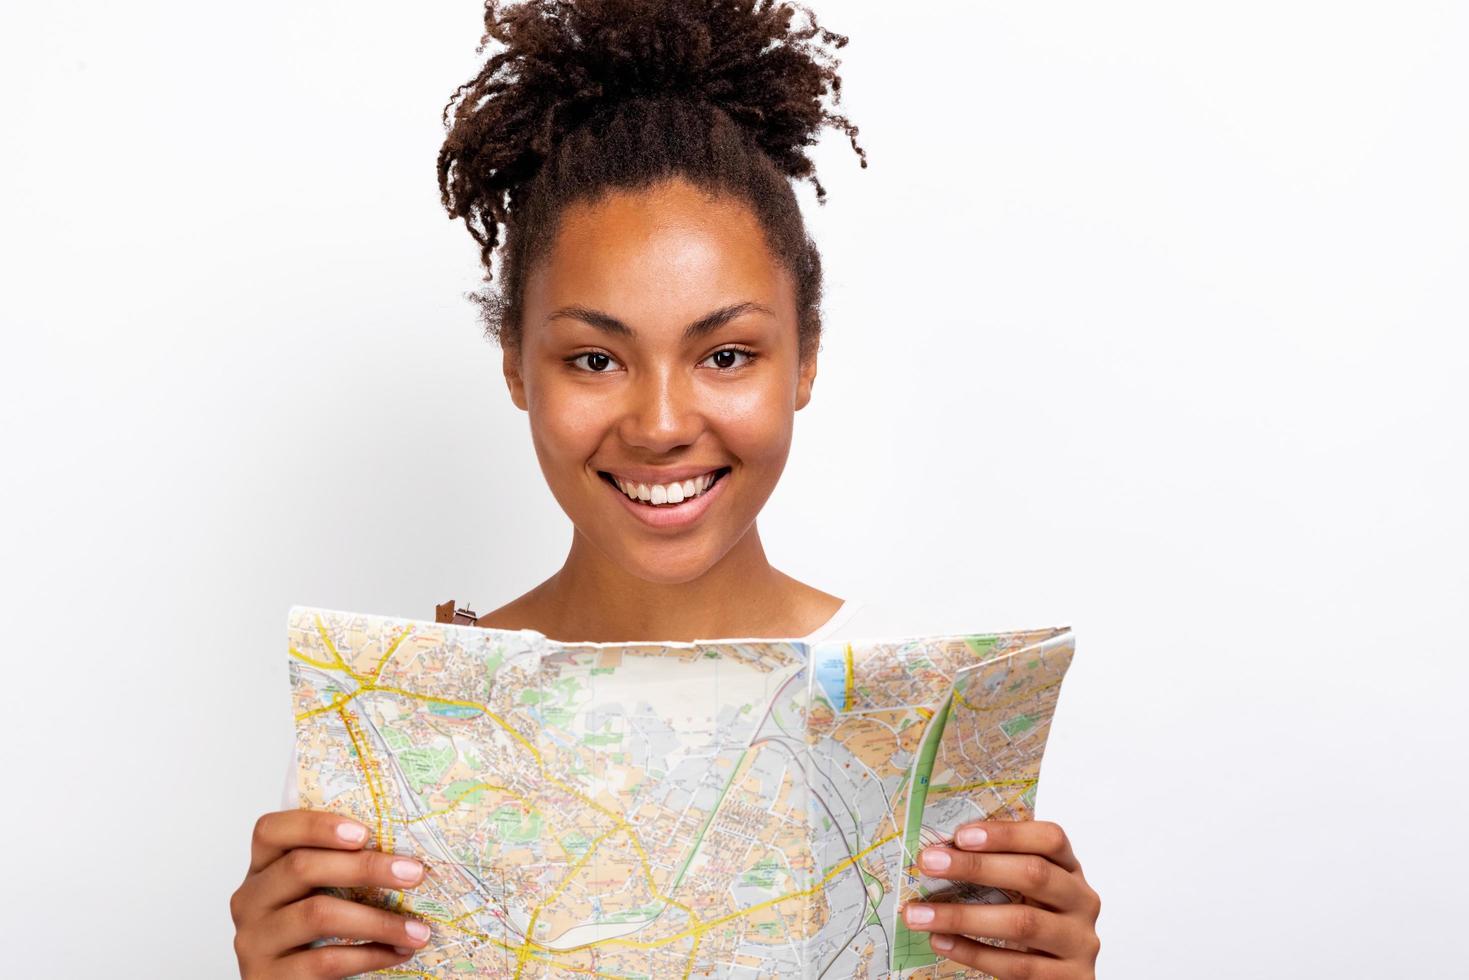 Close Up retrato de una niña feliz viajero con mapa en la mano y mirando a la cámara - imagen foto